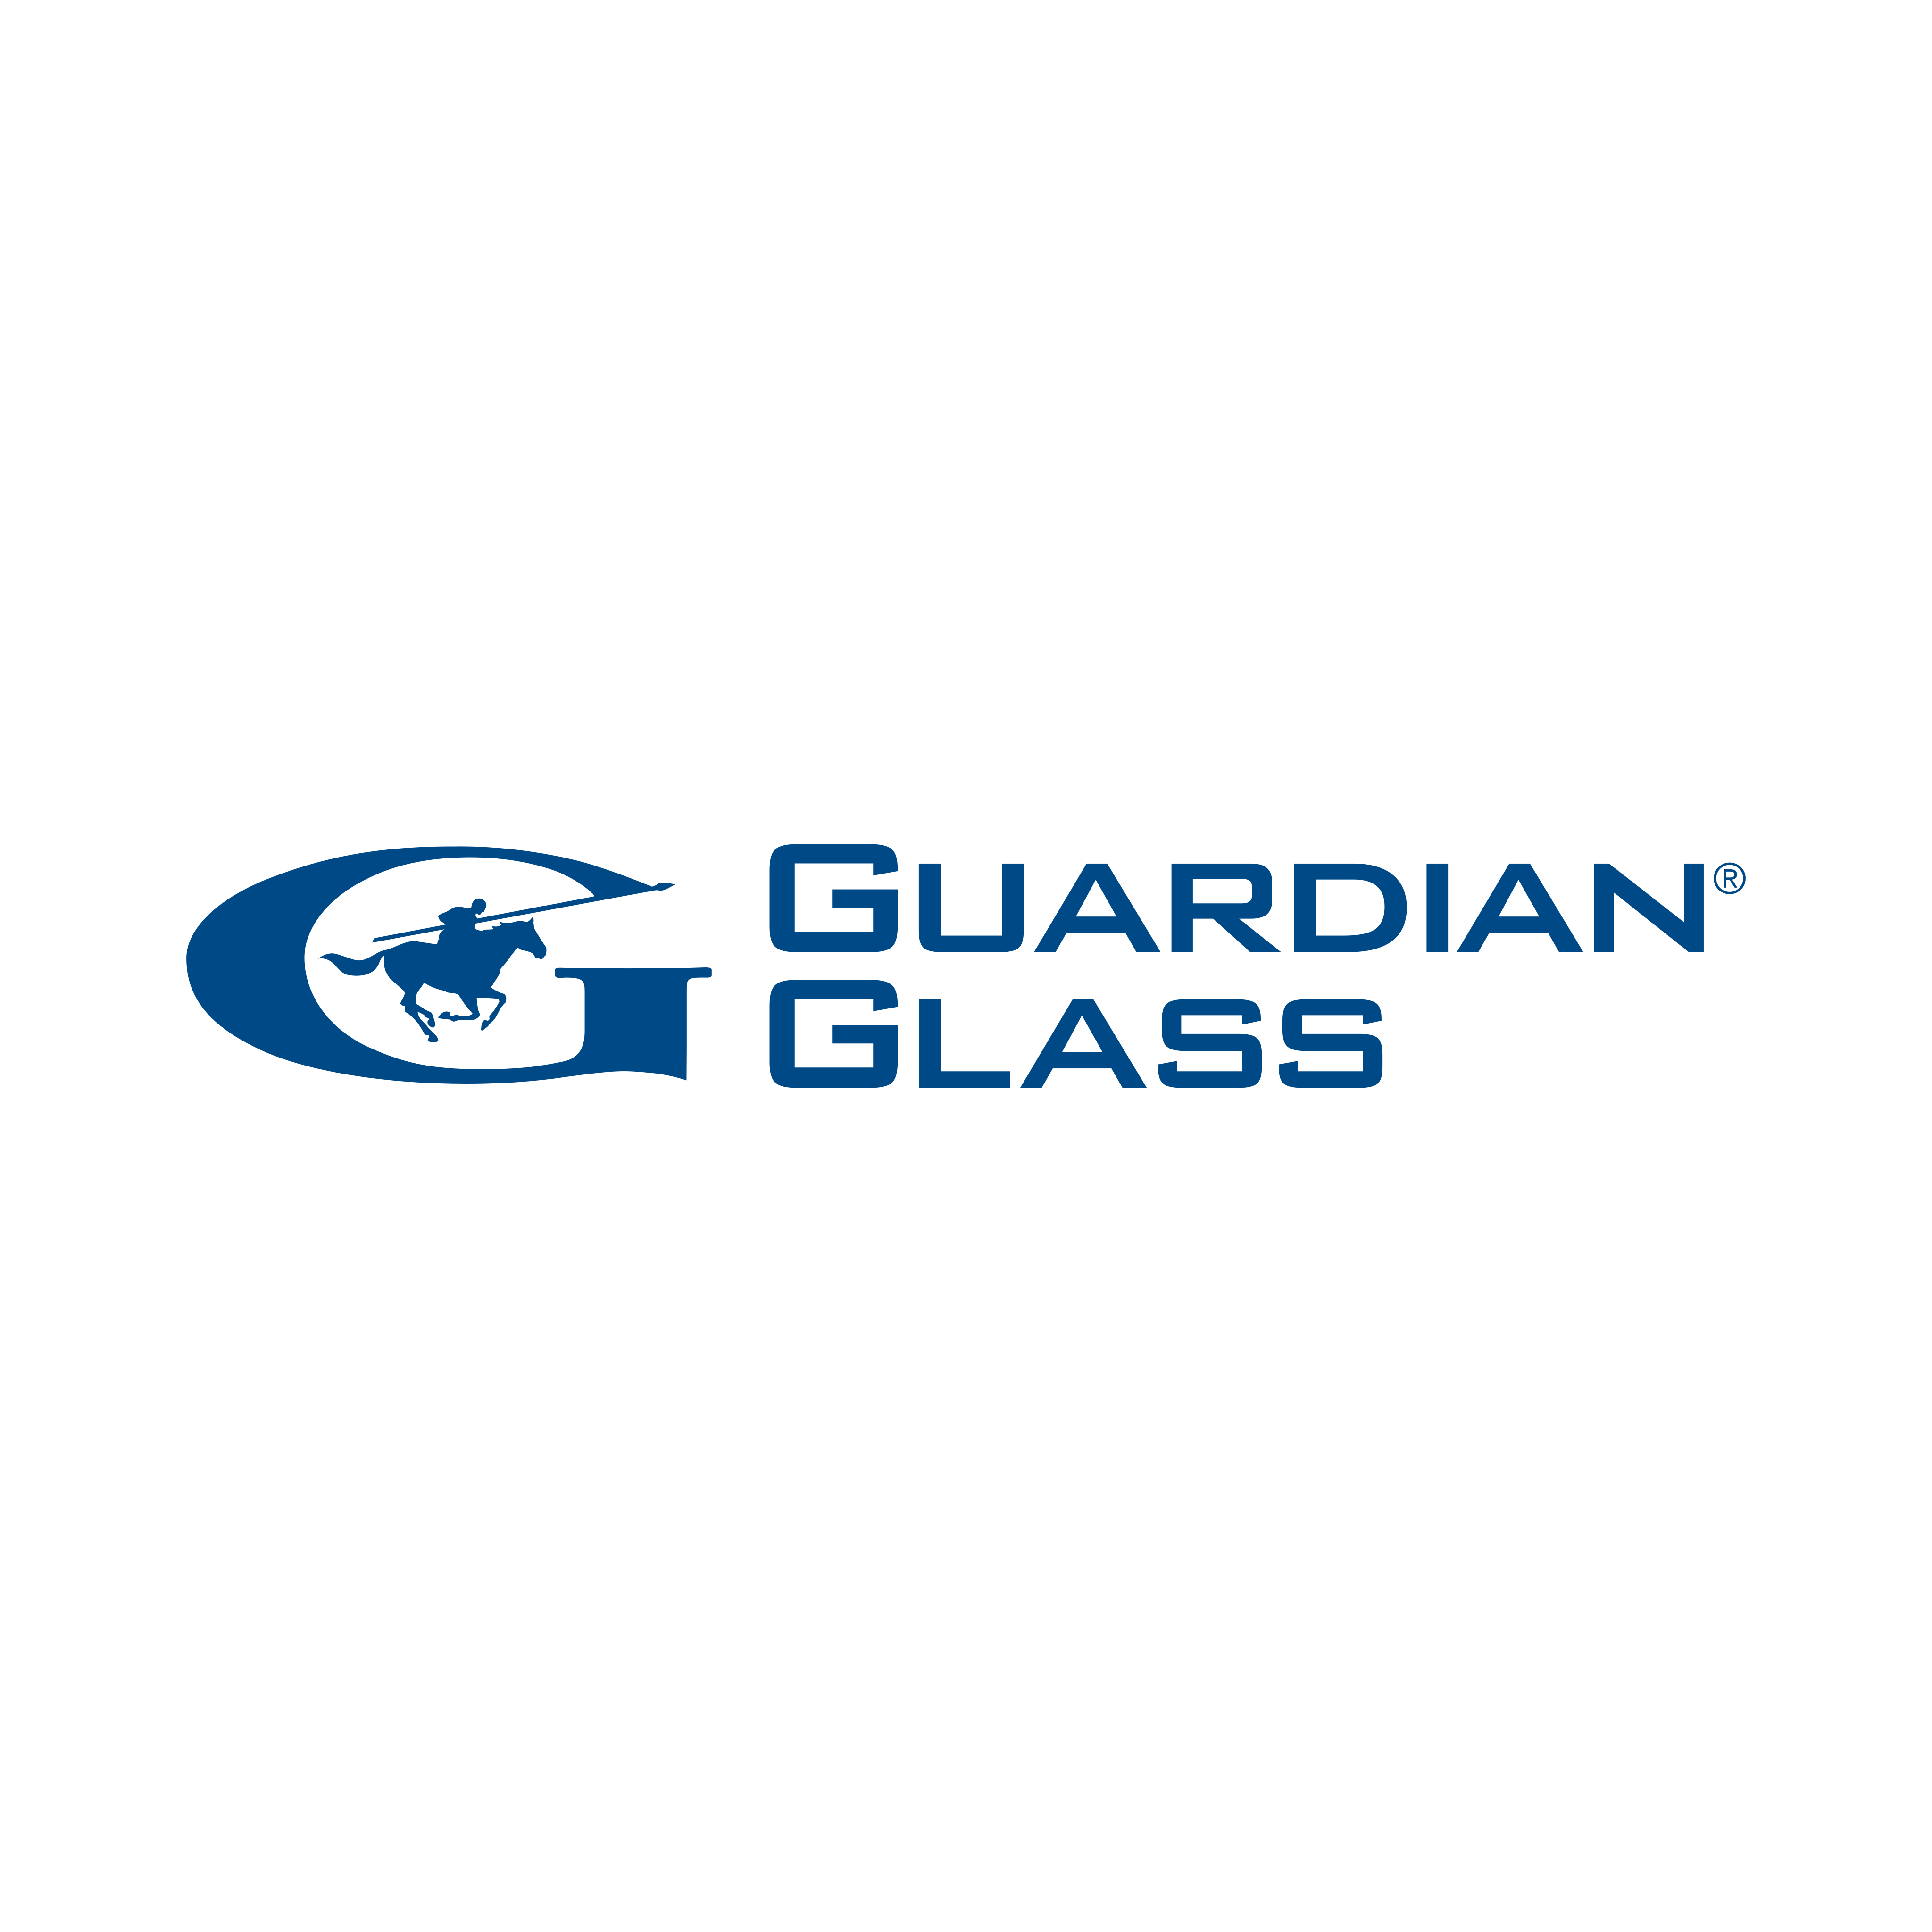 guardian glass logo 0 - Guardian Glass Logo